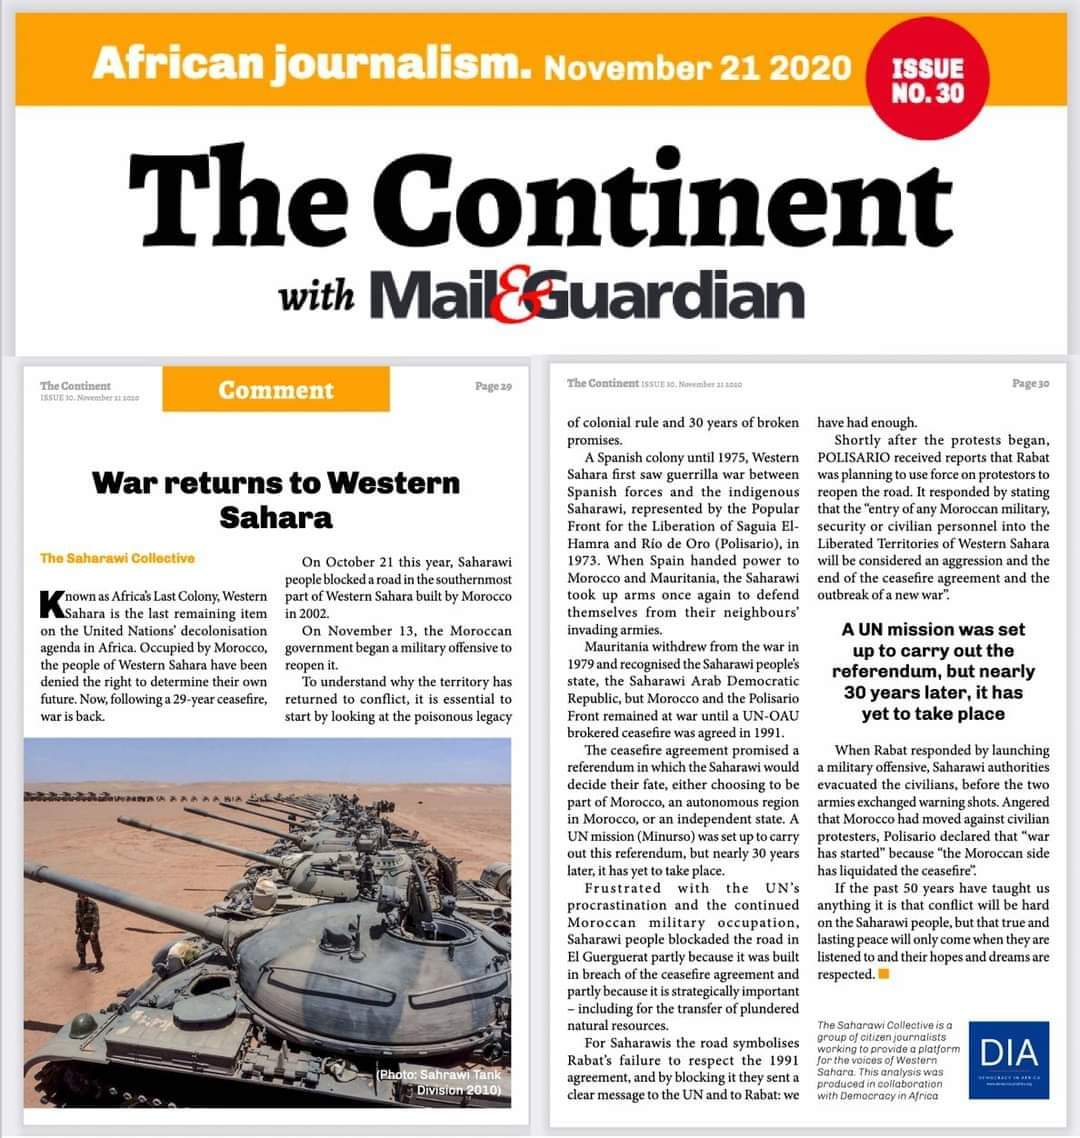 الصحافة الإفريقية الحرب تعود إلي الصحراء الغربية